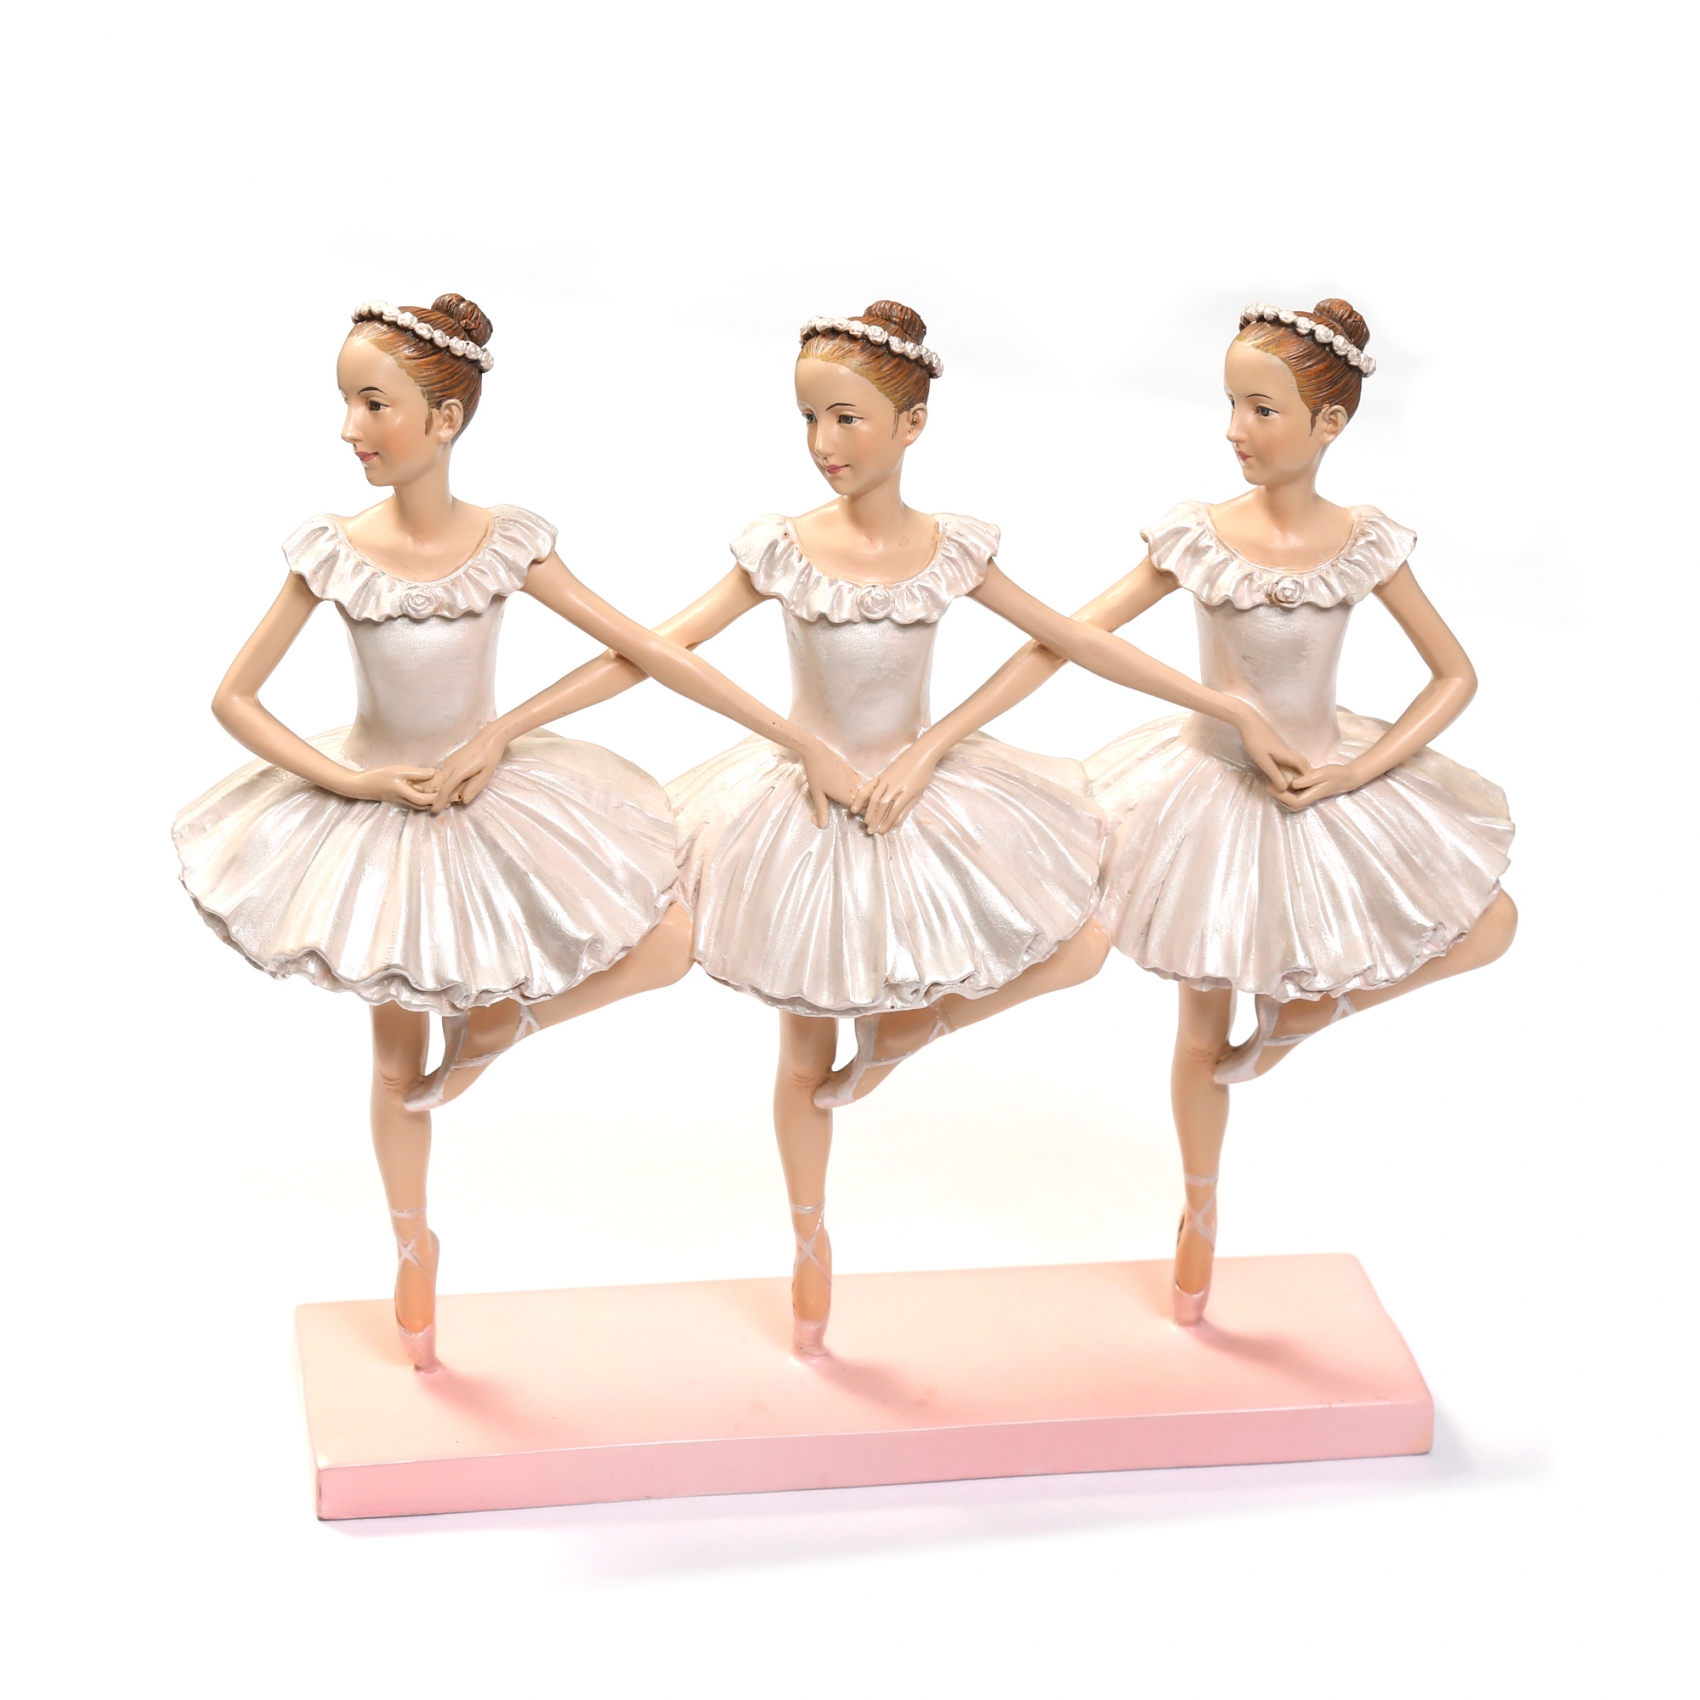 Фарфоровые балерины - дорогое удовольствие. Но насколько же они красивы.